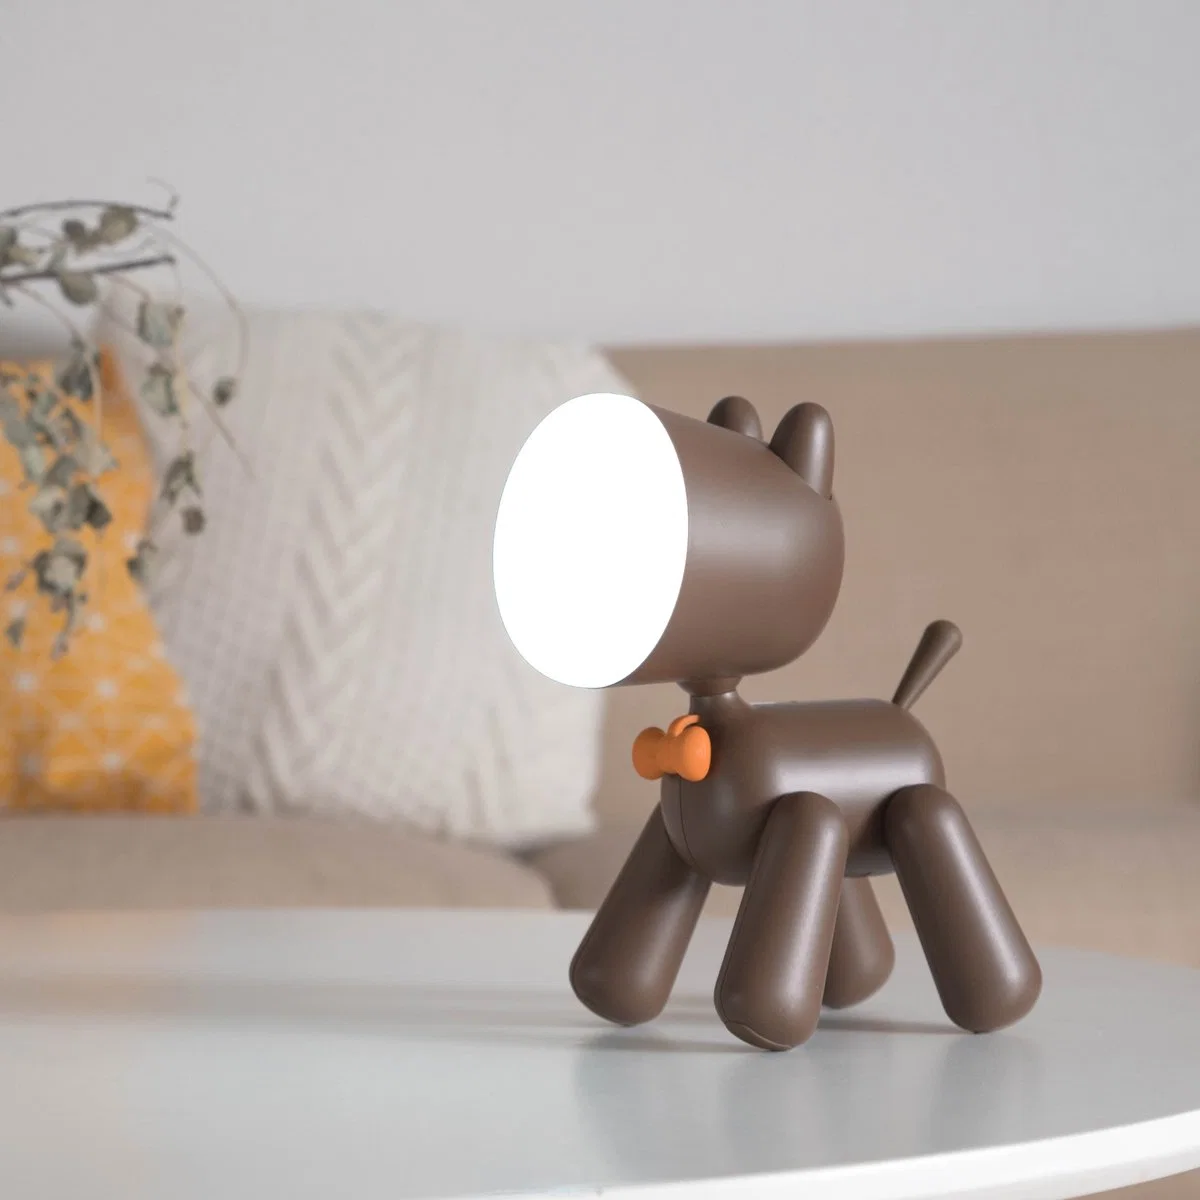 LED Dalmatiner Portable Animal Light Tischleuchte wiederaufladbare Funktionen AS Weihnachtsbeleuchtung